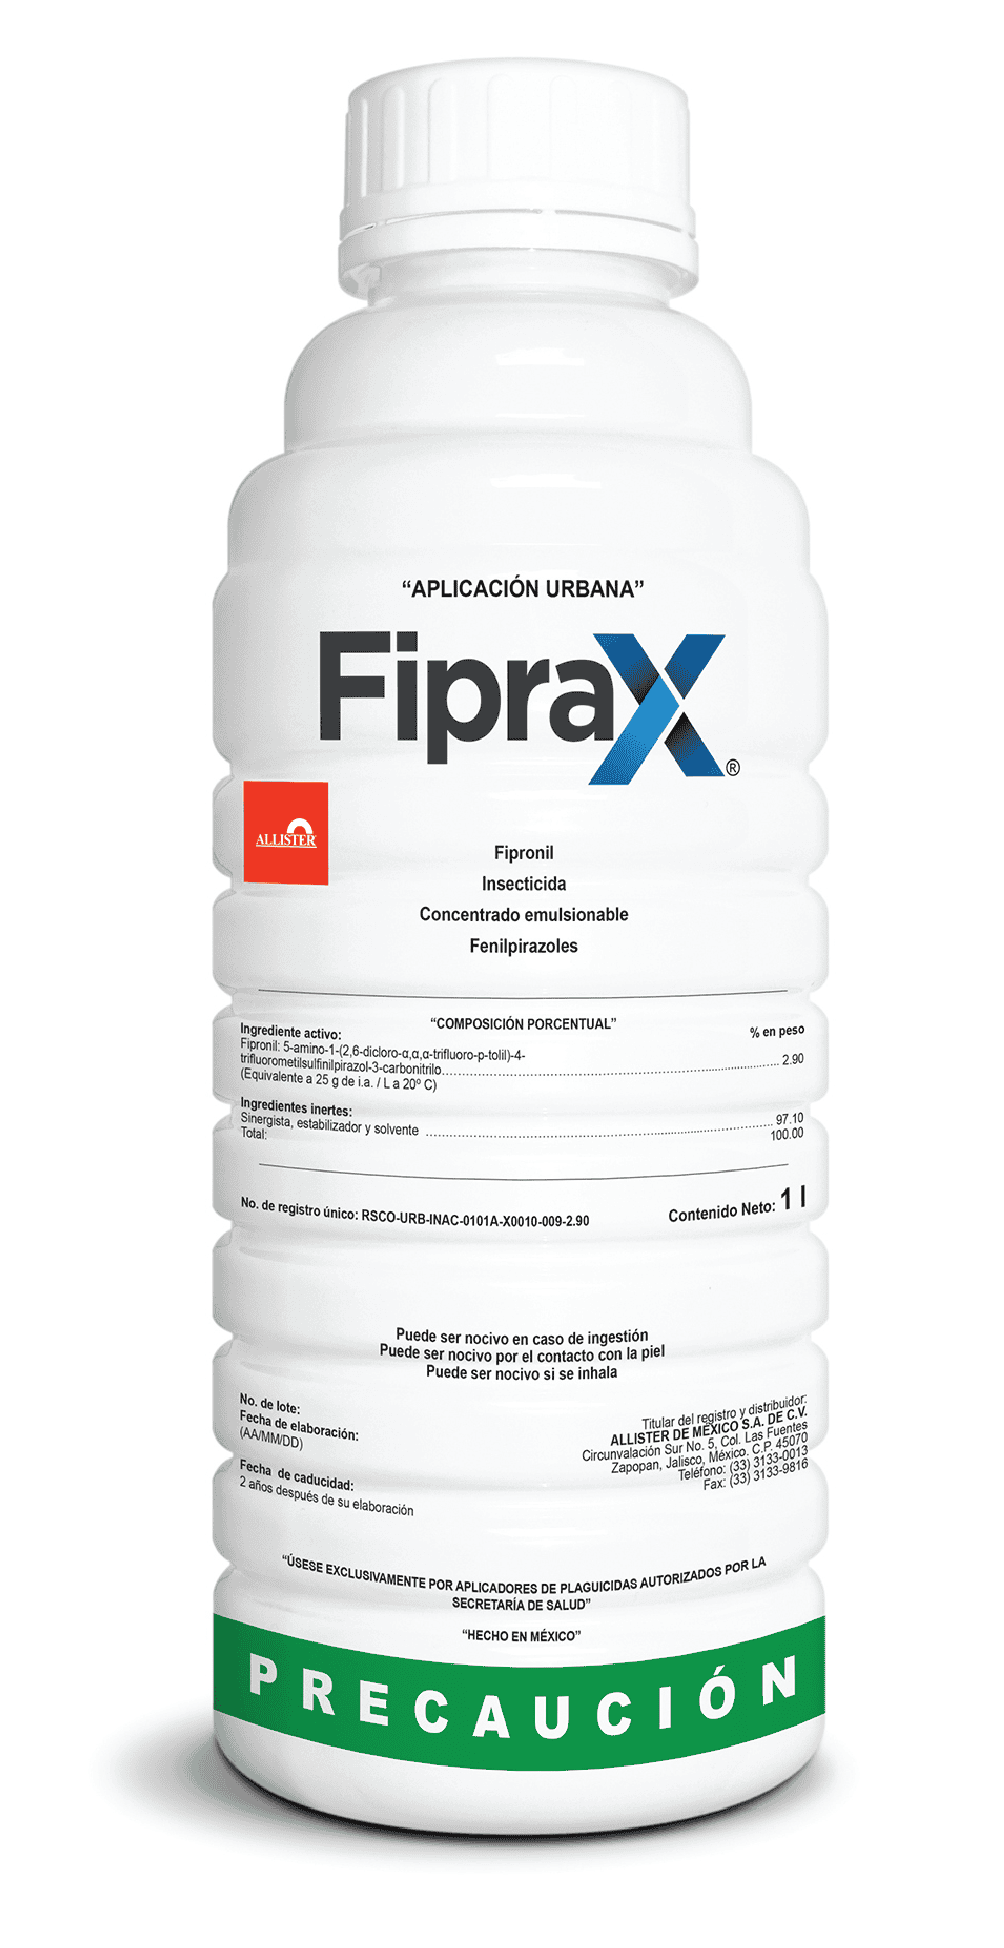 Fiprax - Fipronil - Insecticida Urbano marca Allister - Caja con 12 botellas 950 ml 30% de descuento